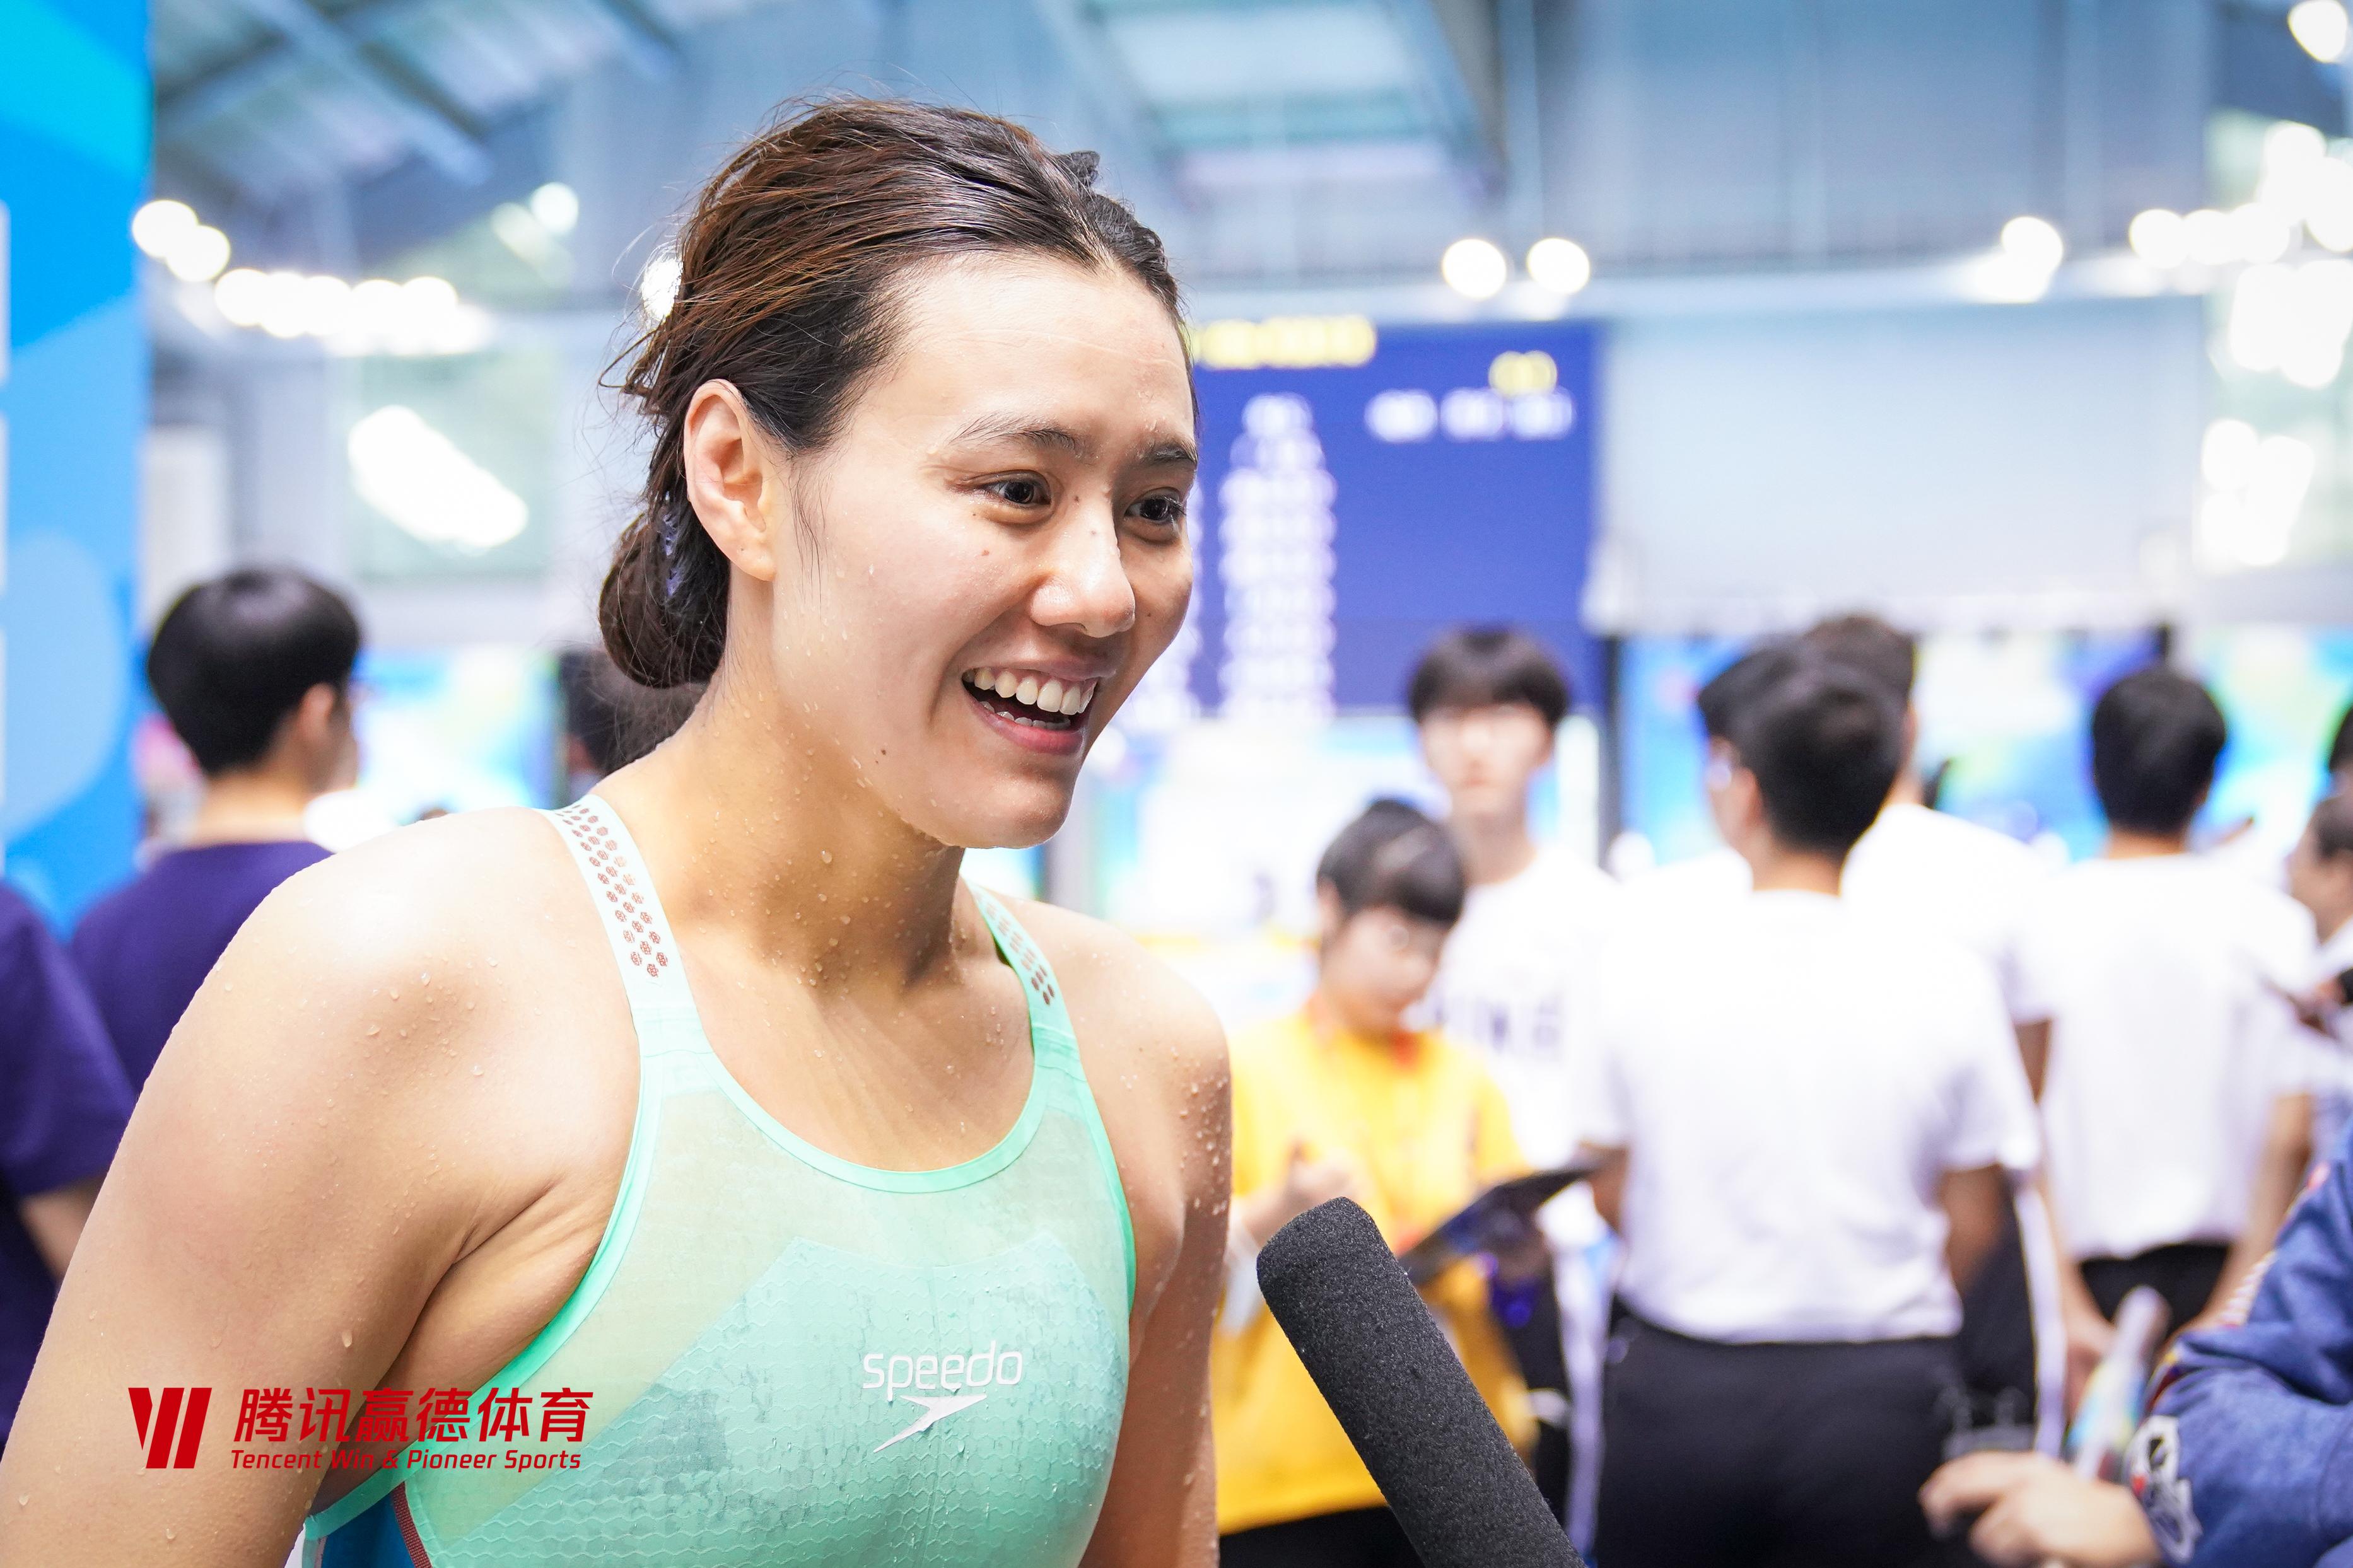 中国游泳争霸赛后,刘湘将继续回到训练当中,"这次比赛之后,我和何练说